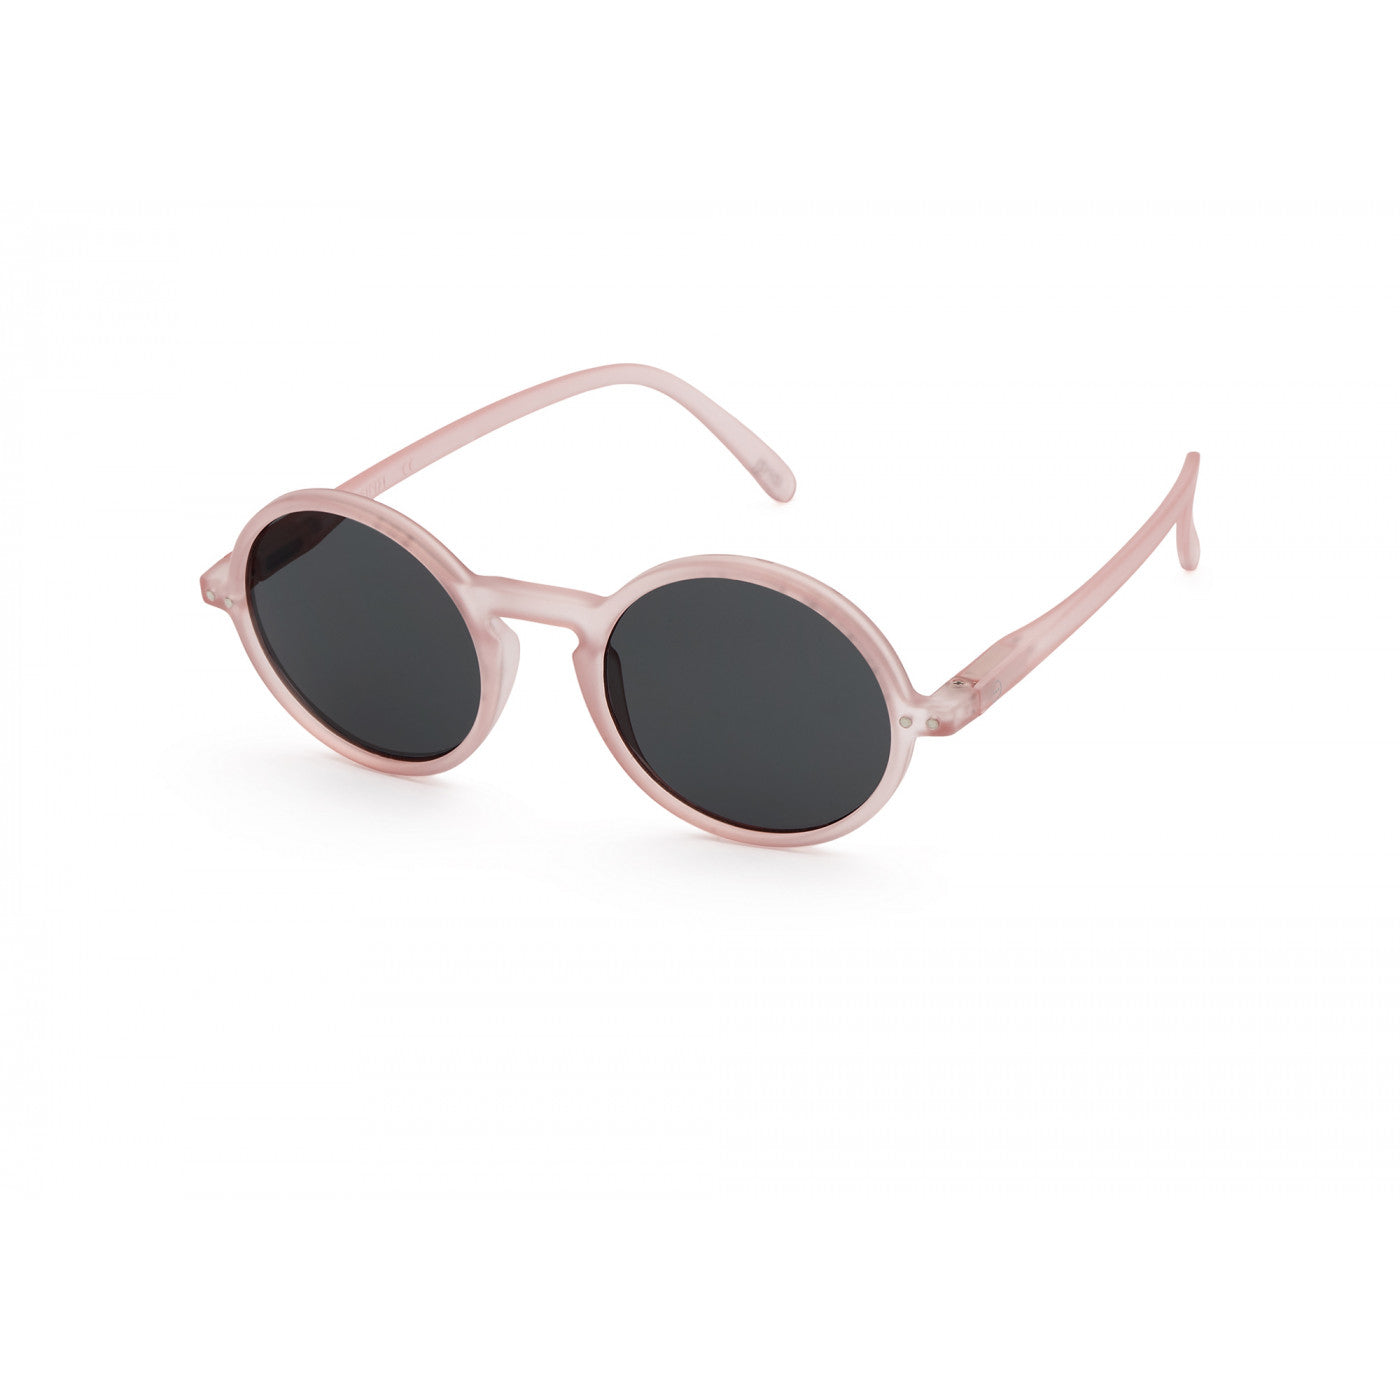 IZIPIZI Sunglasses - Shape #G Pink